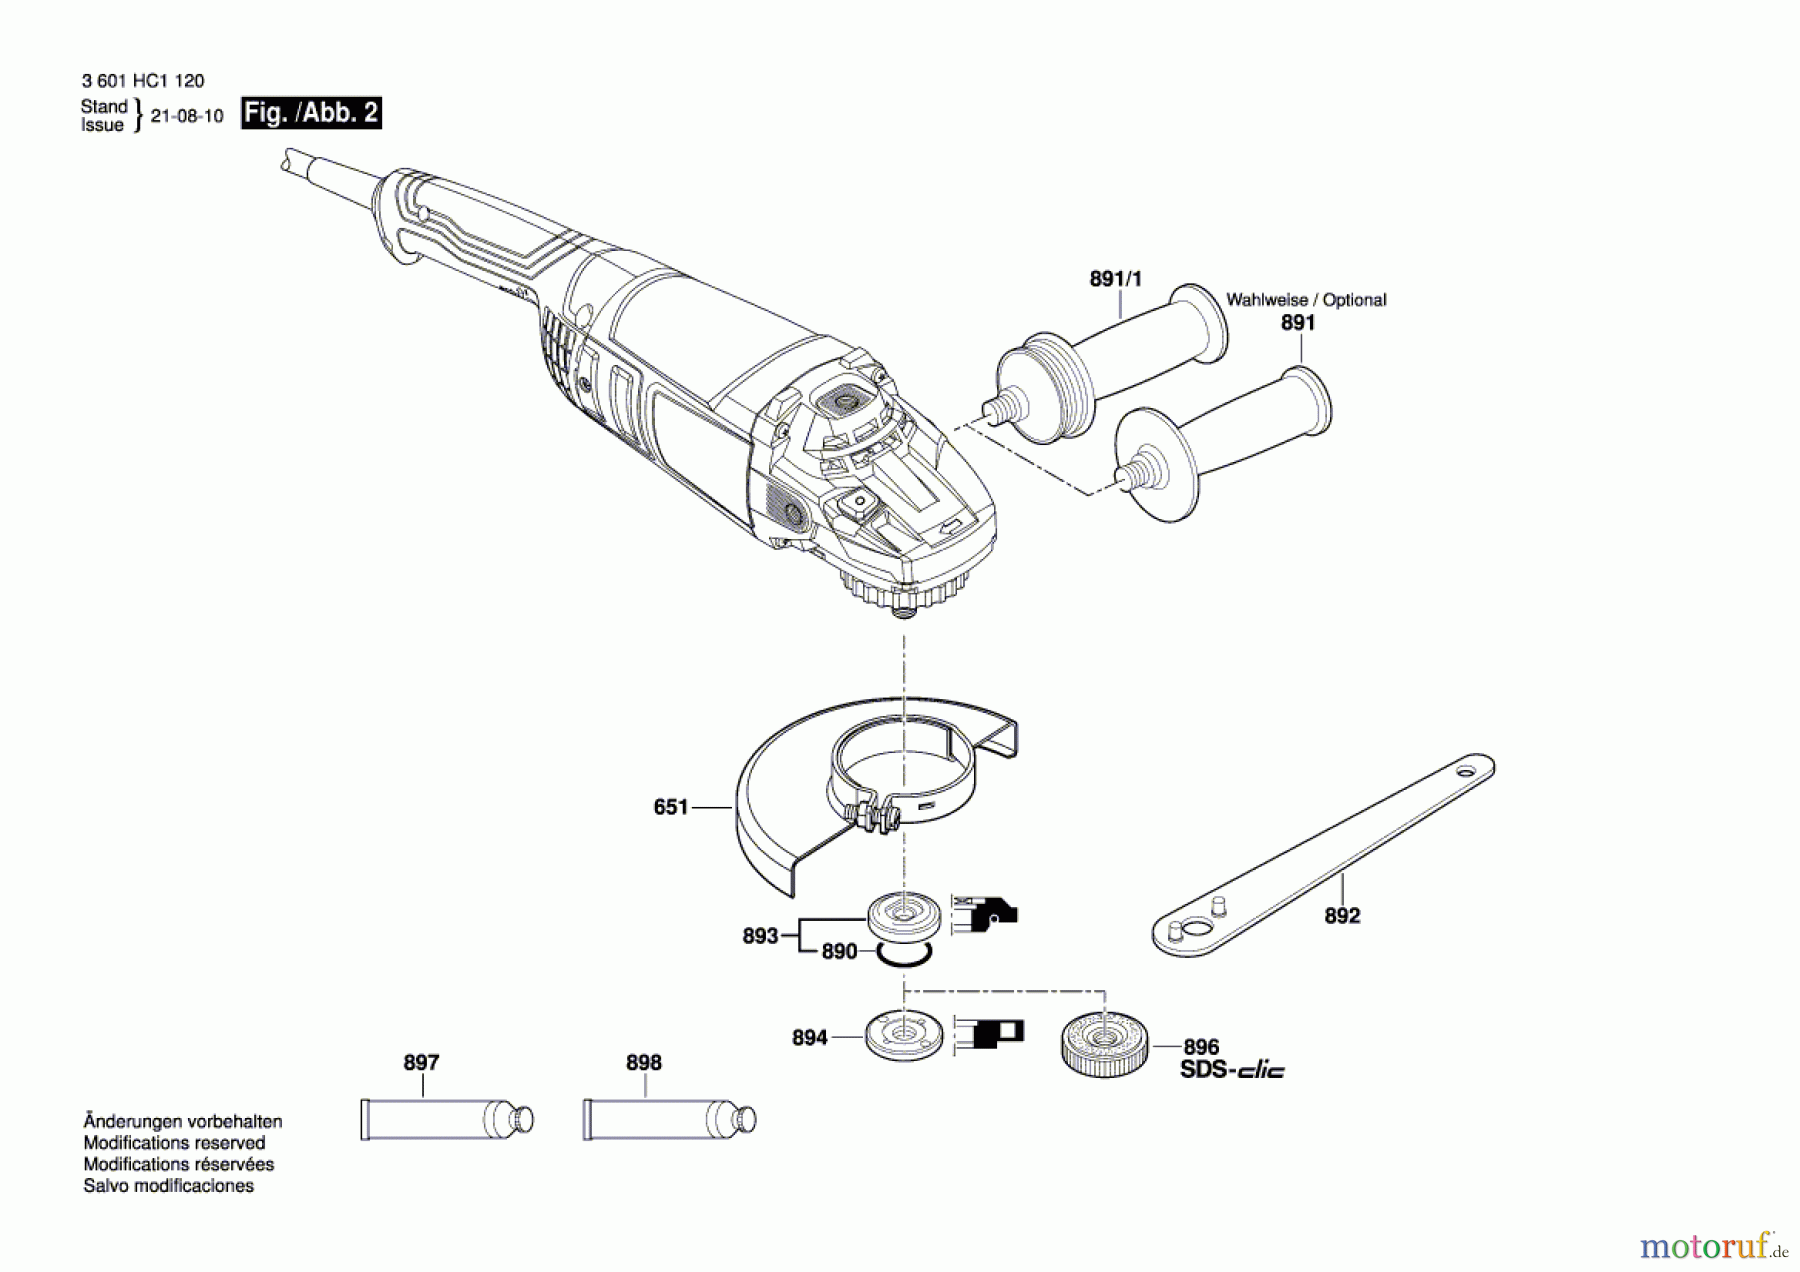  Bosch Werkzeug Winkelschleifer GWS 22-230 P Seite 2